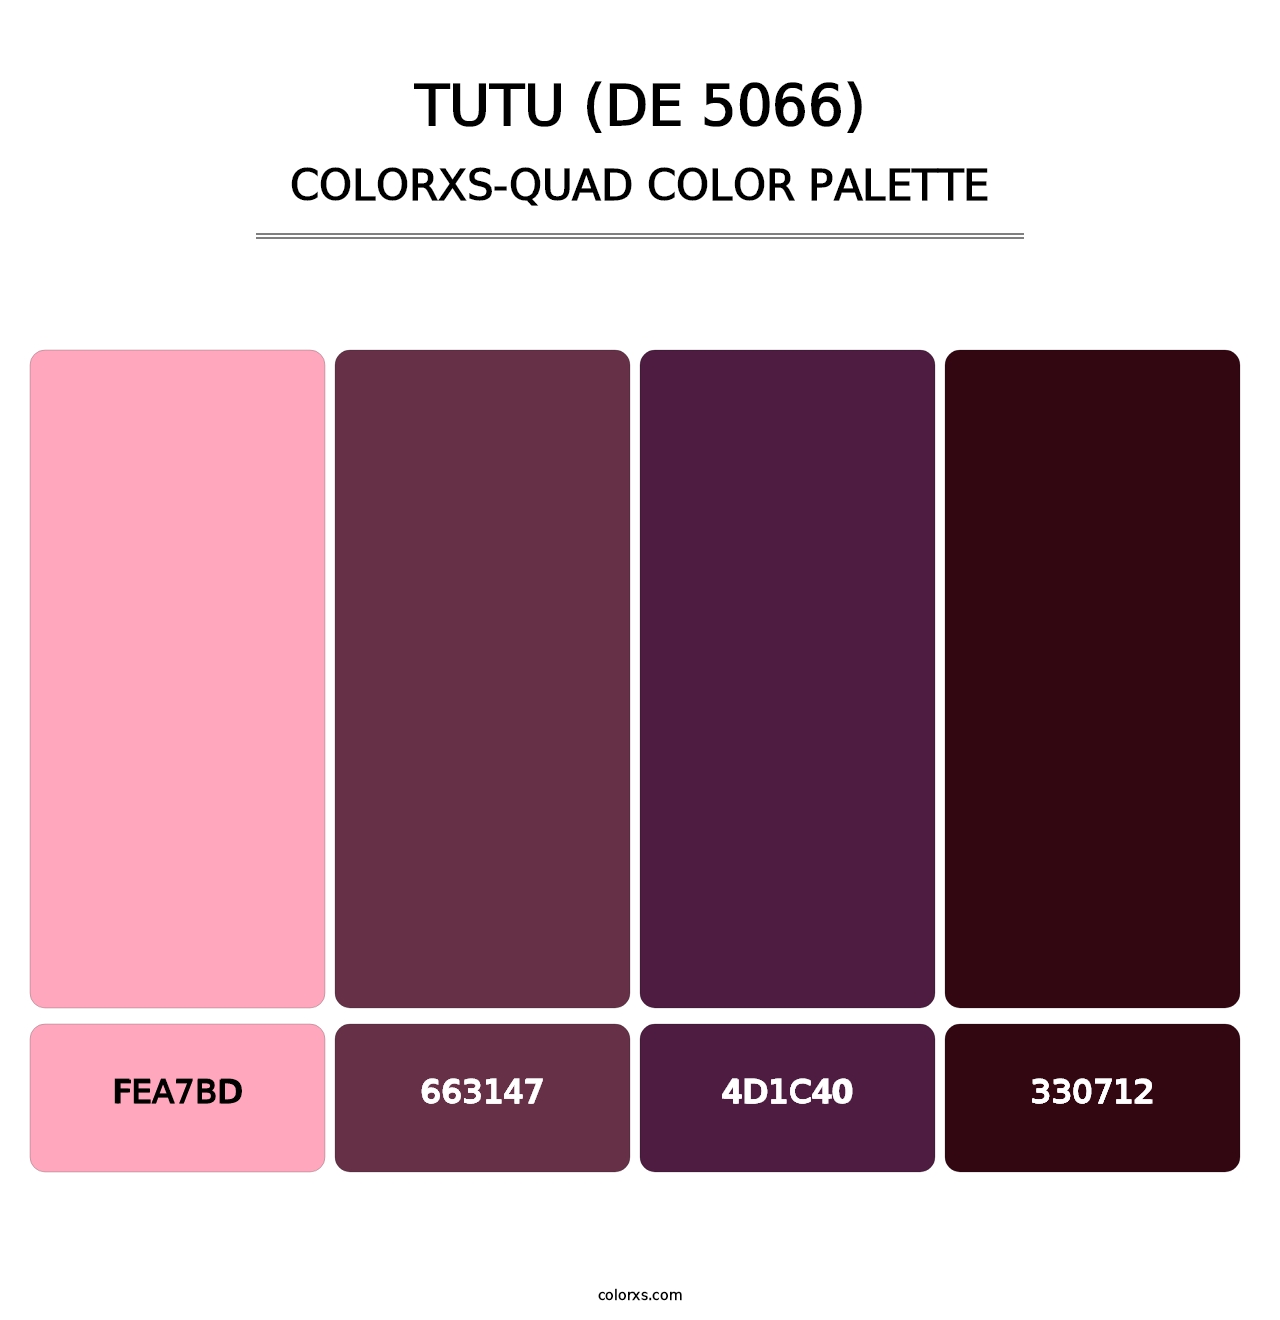 Tutu (DE 5066) - Colorxs Quad Palette